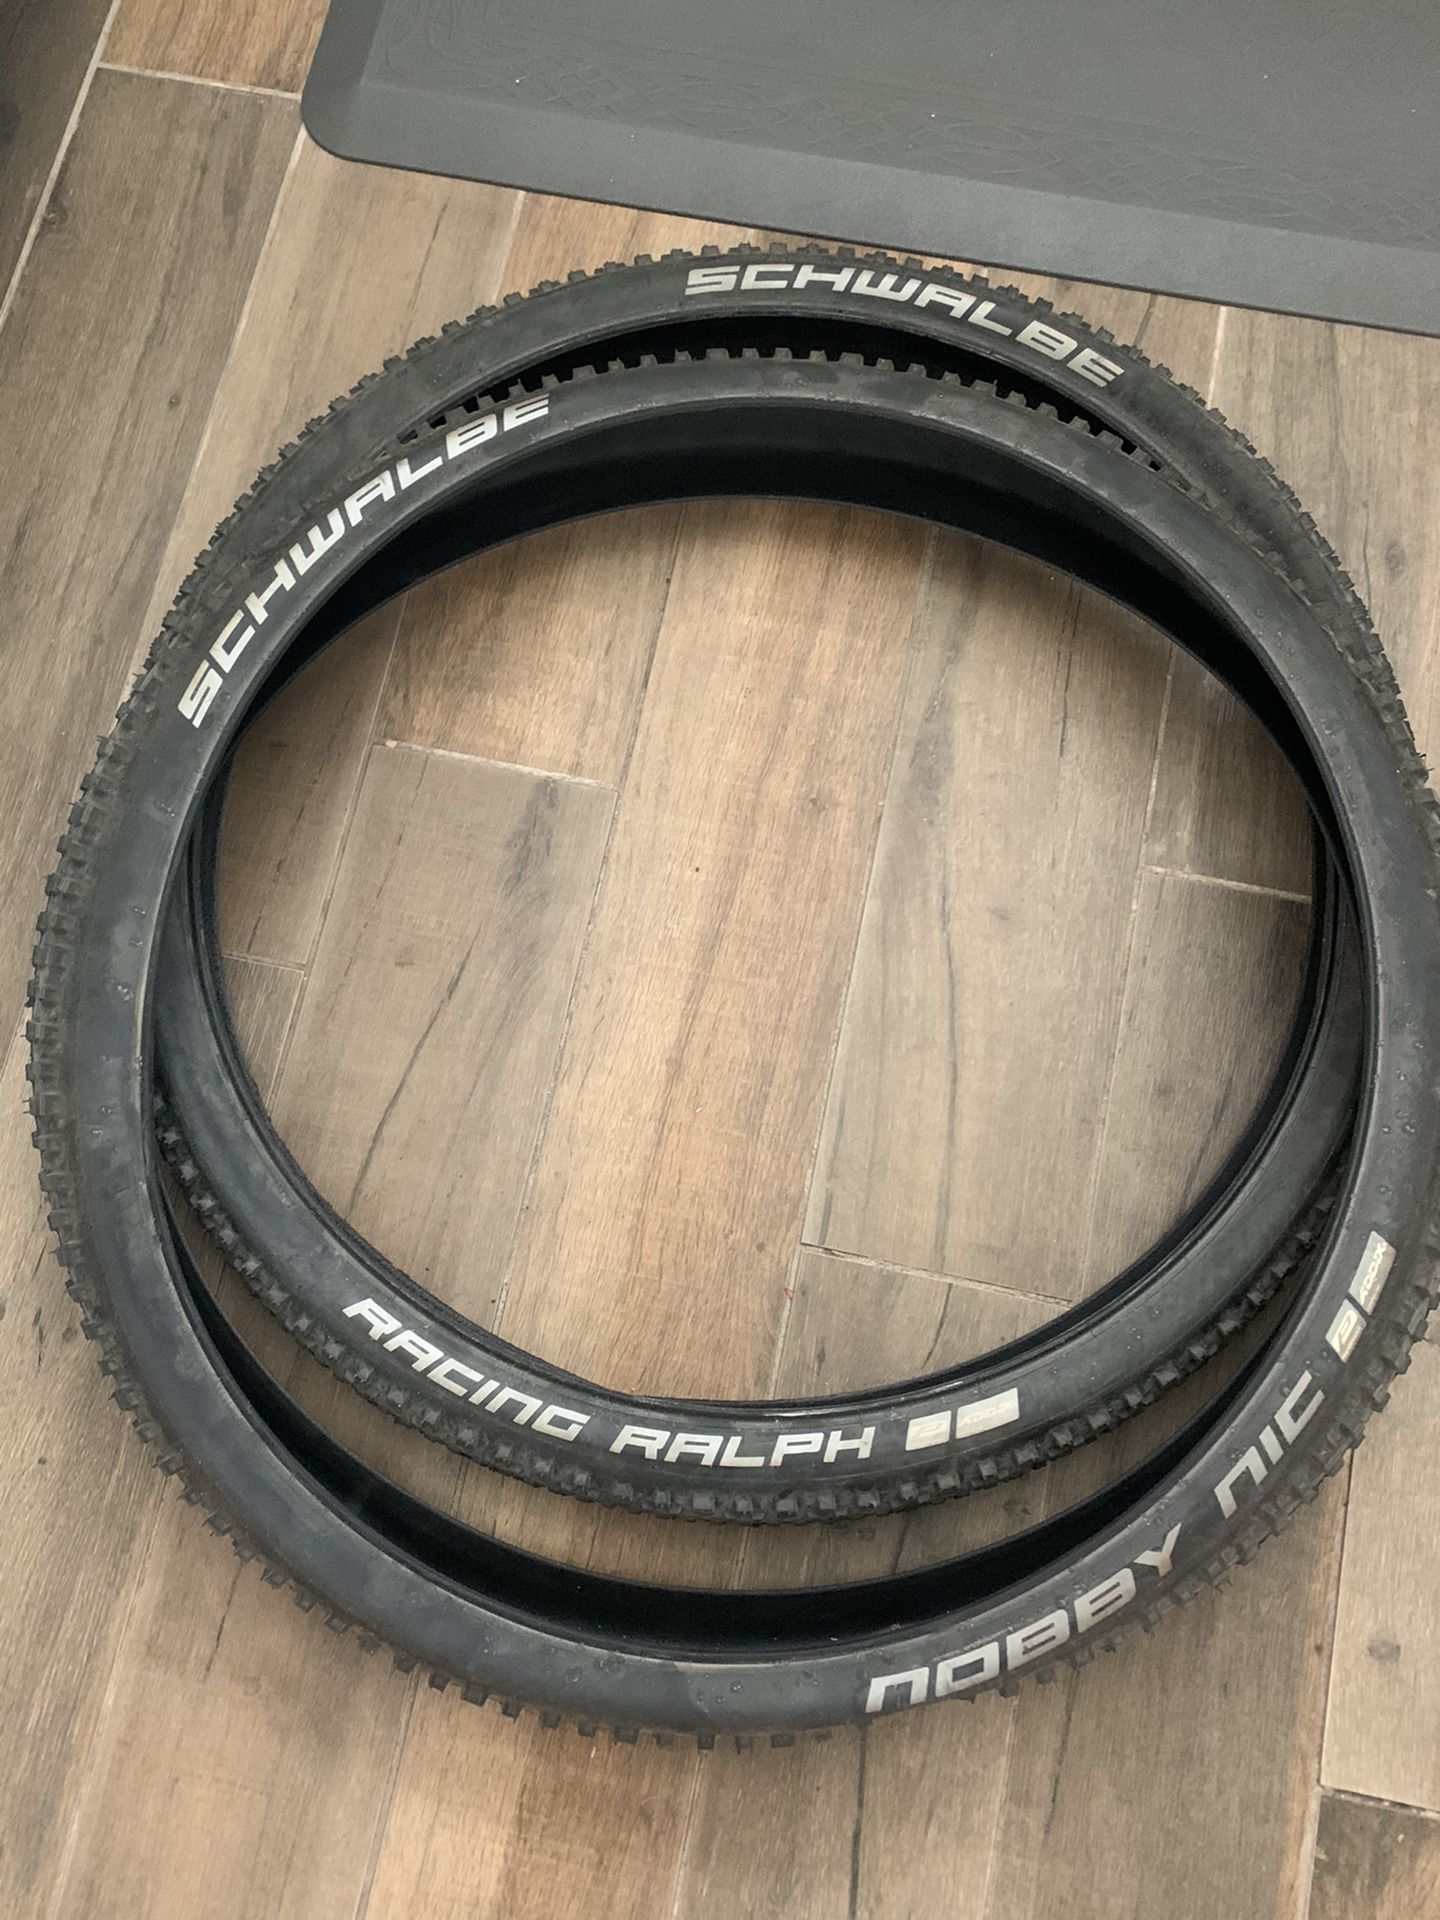 29” mountain bike tires